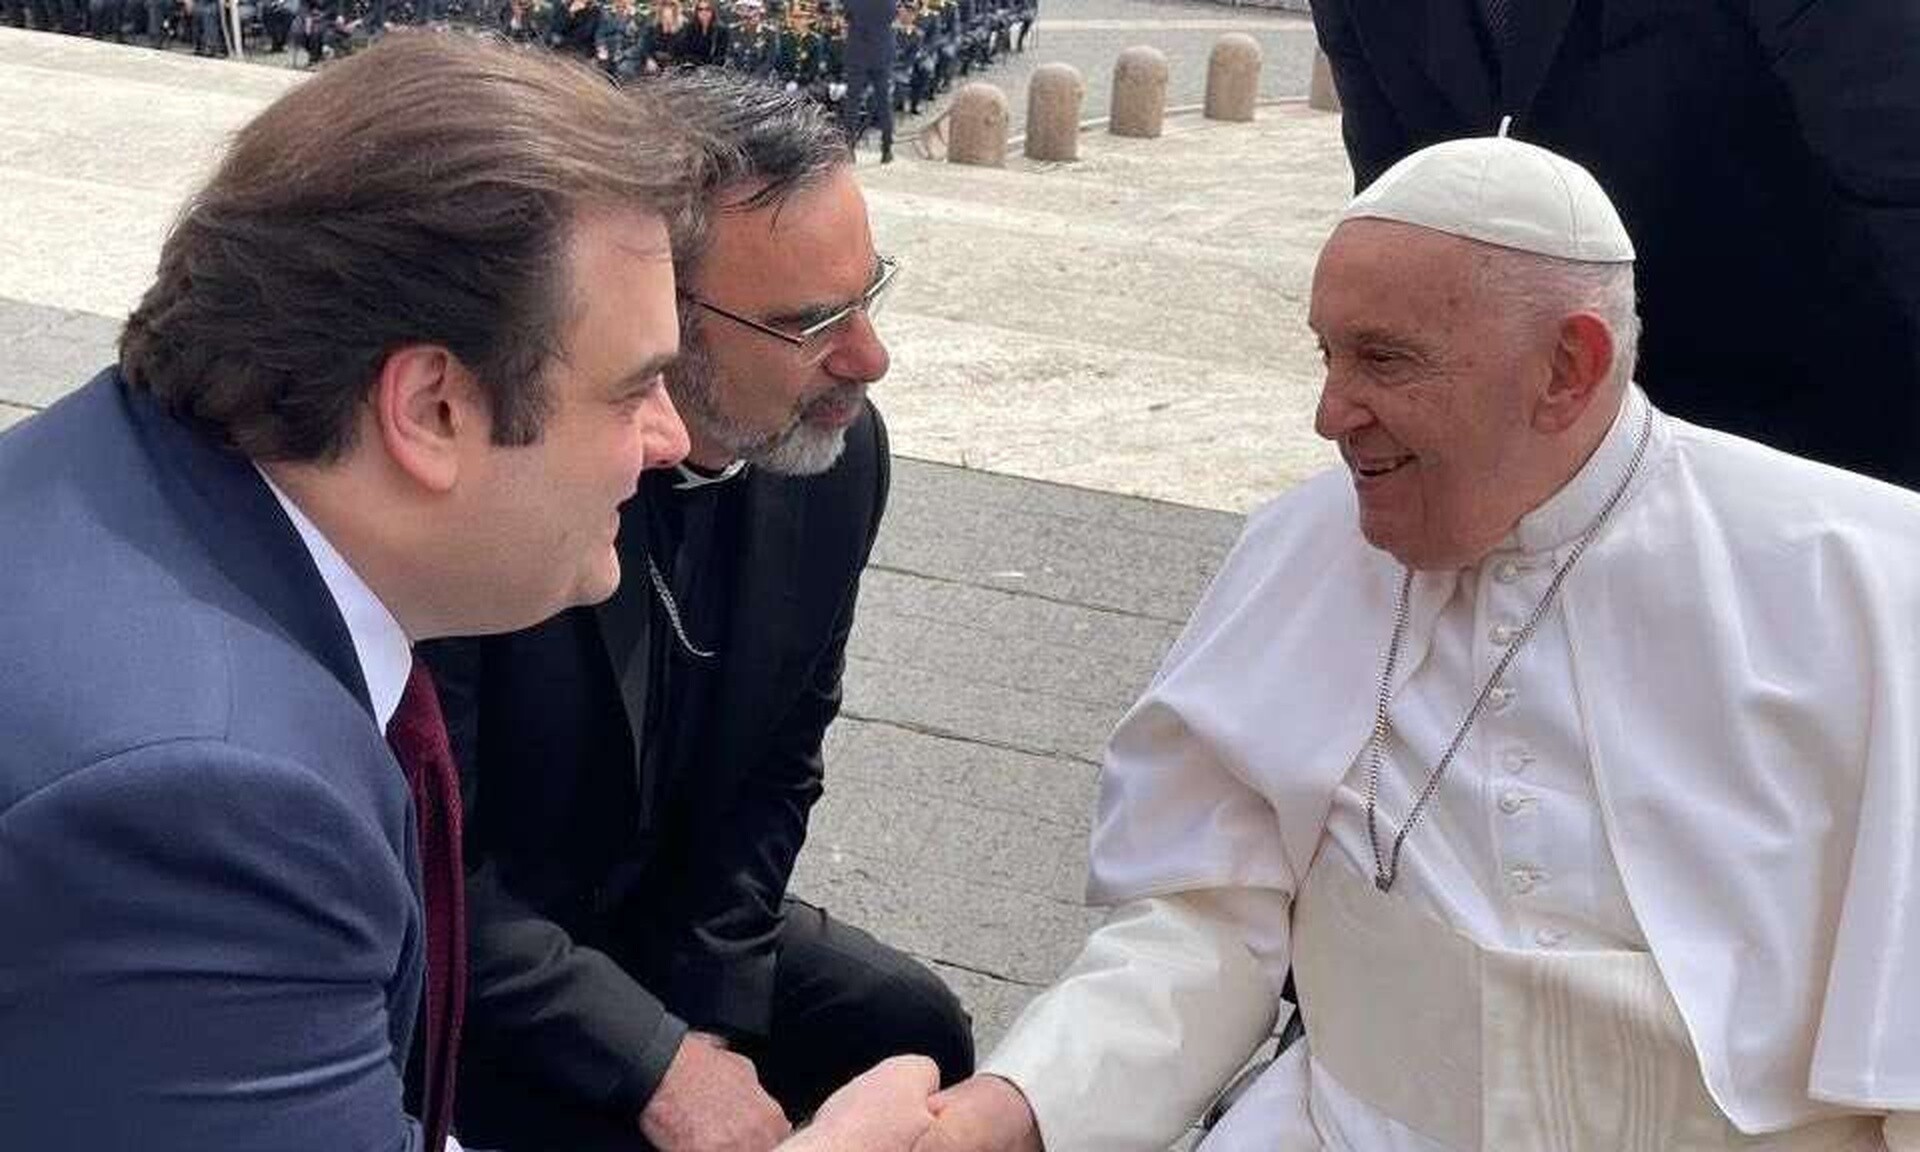 Συνάντηση Πιερρακάκη με τον Πάπα Φραγκίσκο στο Βατικανό – Τι είπε για τη Μονή της Χώρας